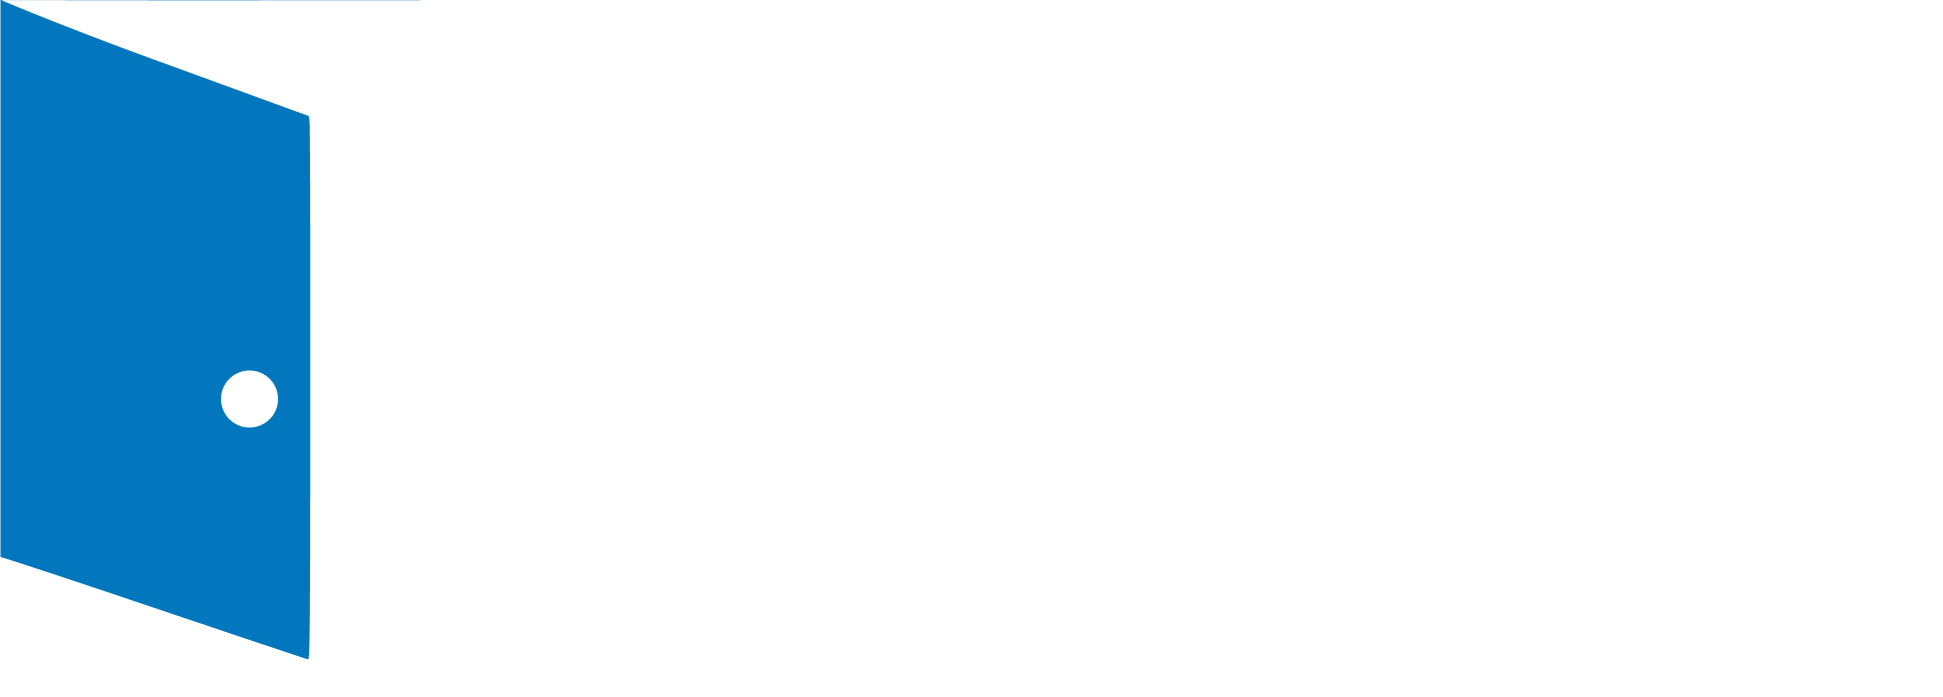 DoorRepairReplace logo